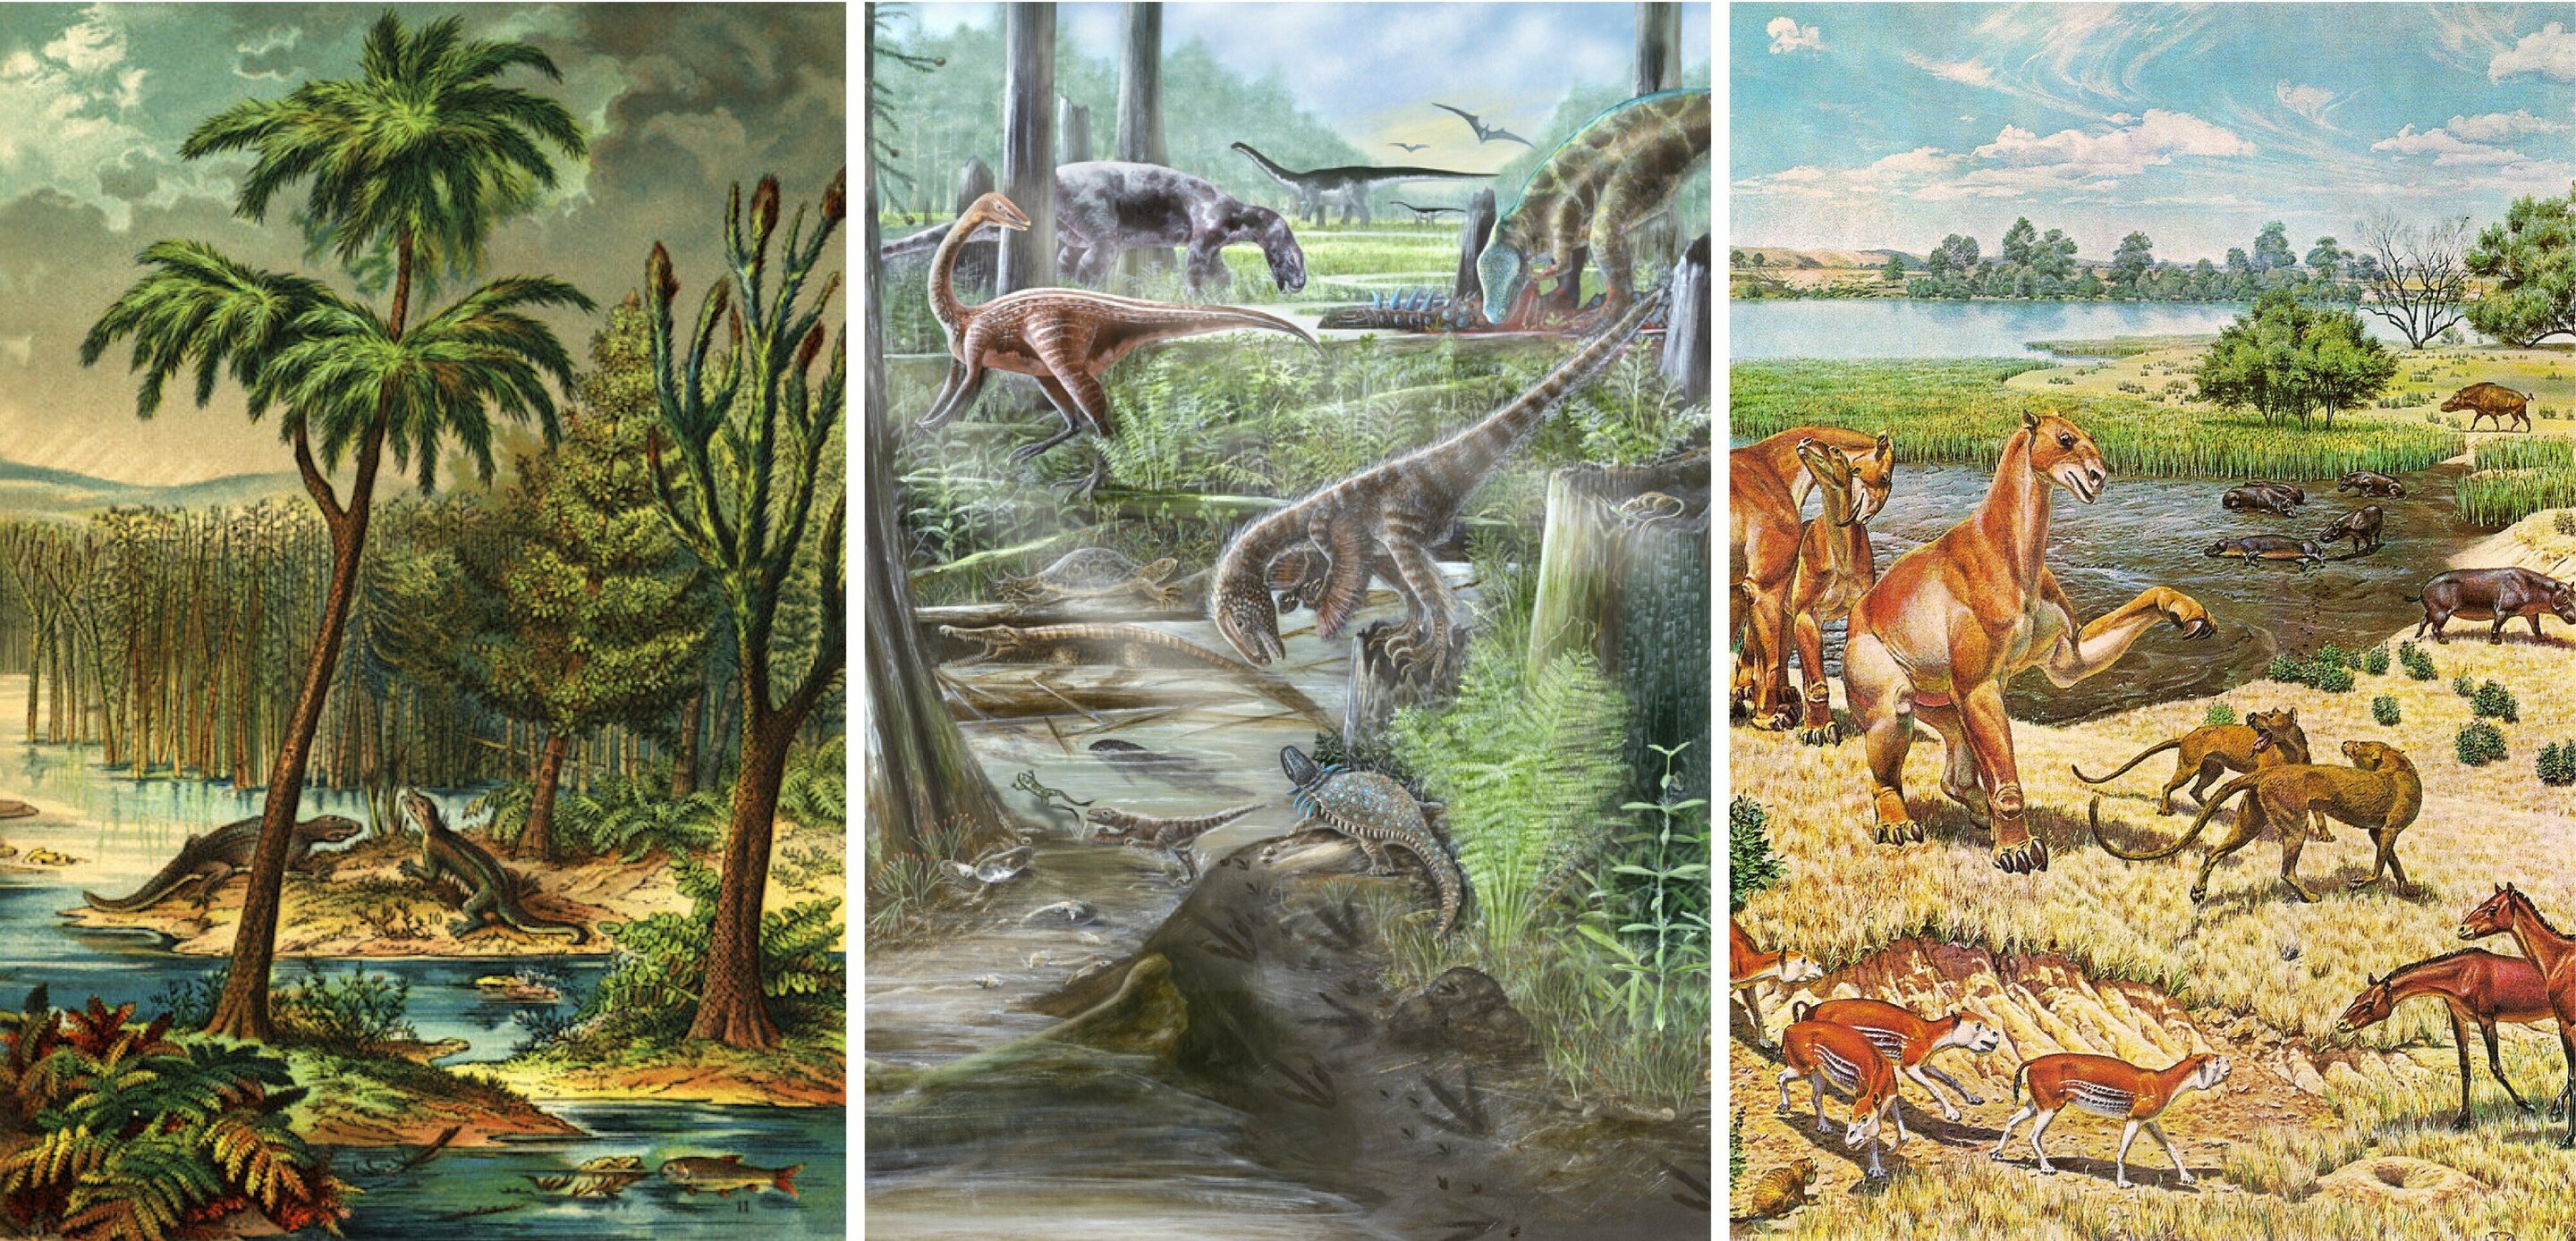 Mangfoldigheden af liv på Jorden, har ikke ændret sig siden dinosaurerne